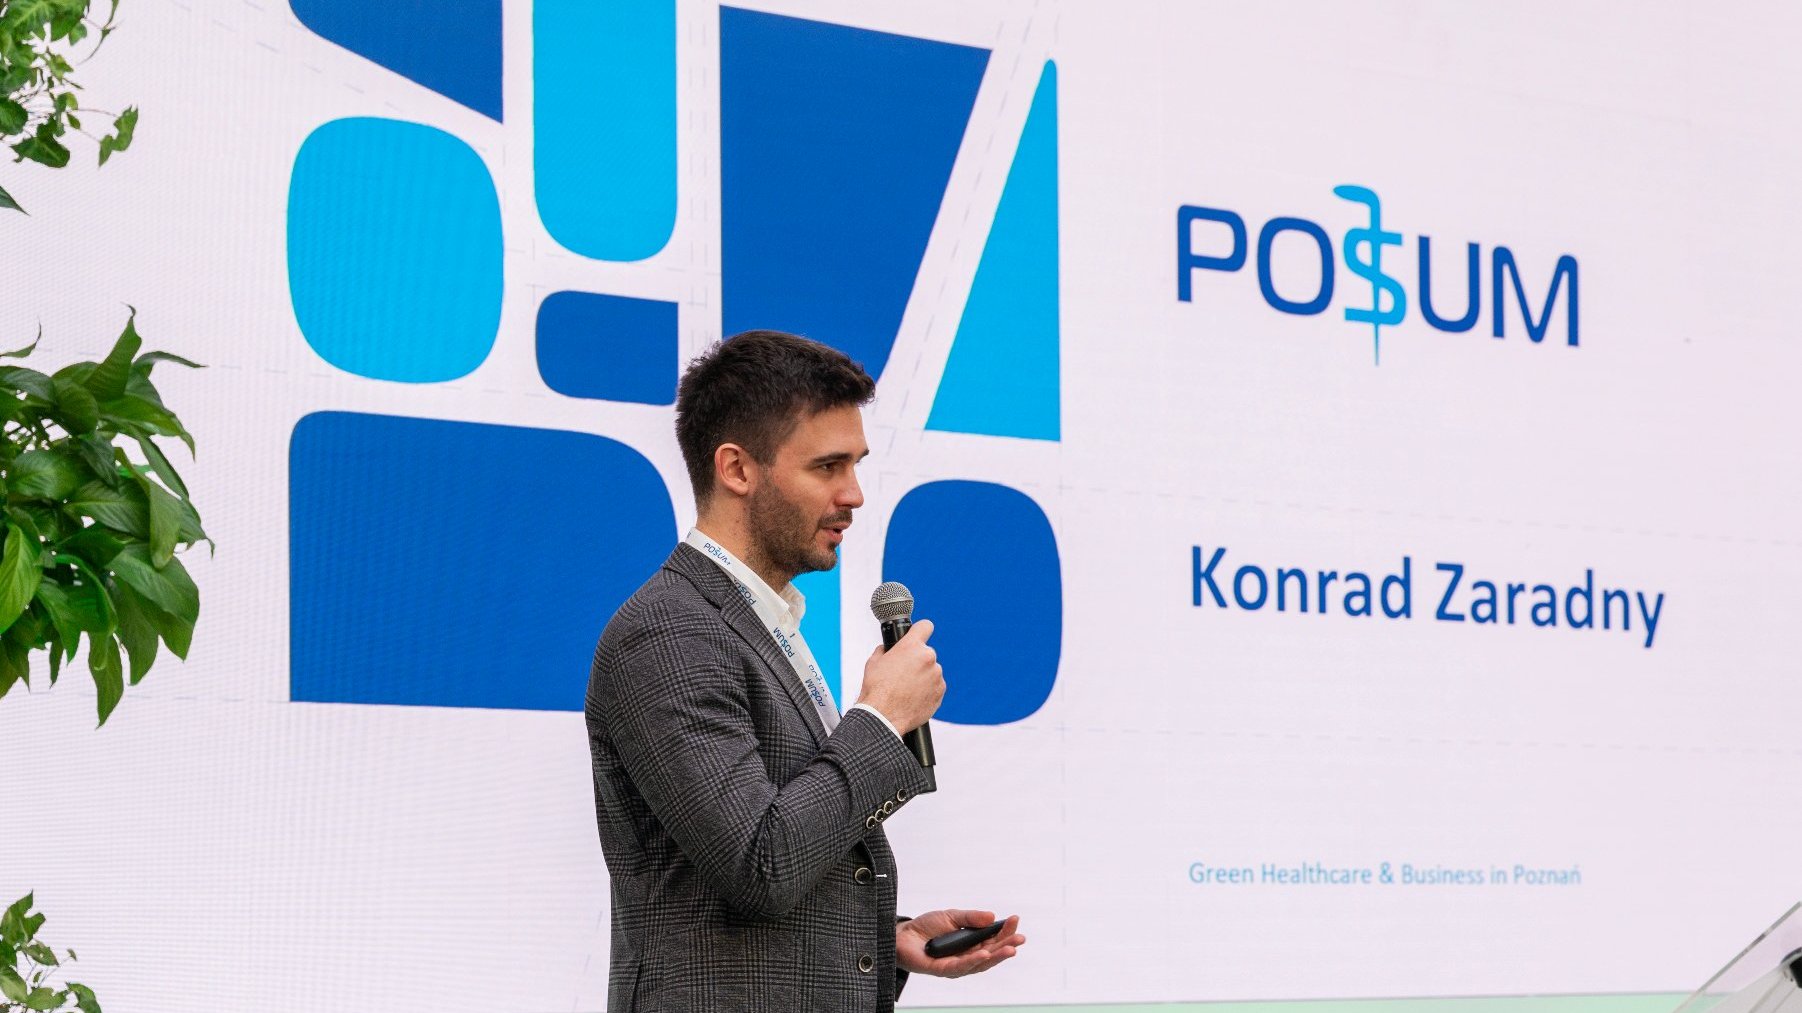 Na zdjęciu meżczyzna z mikrofonem w ręku, stoi profilem do obiektywu, w tle logo POSUM